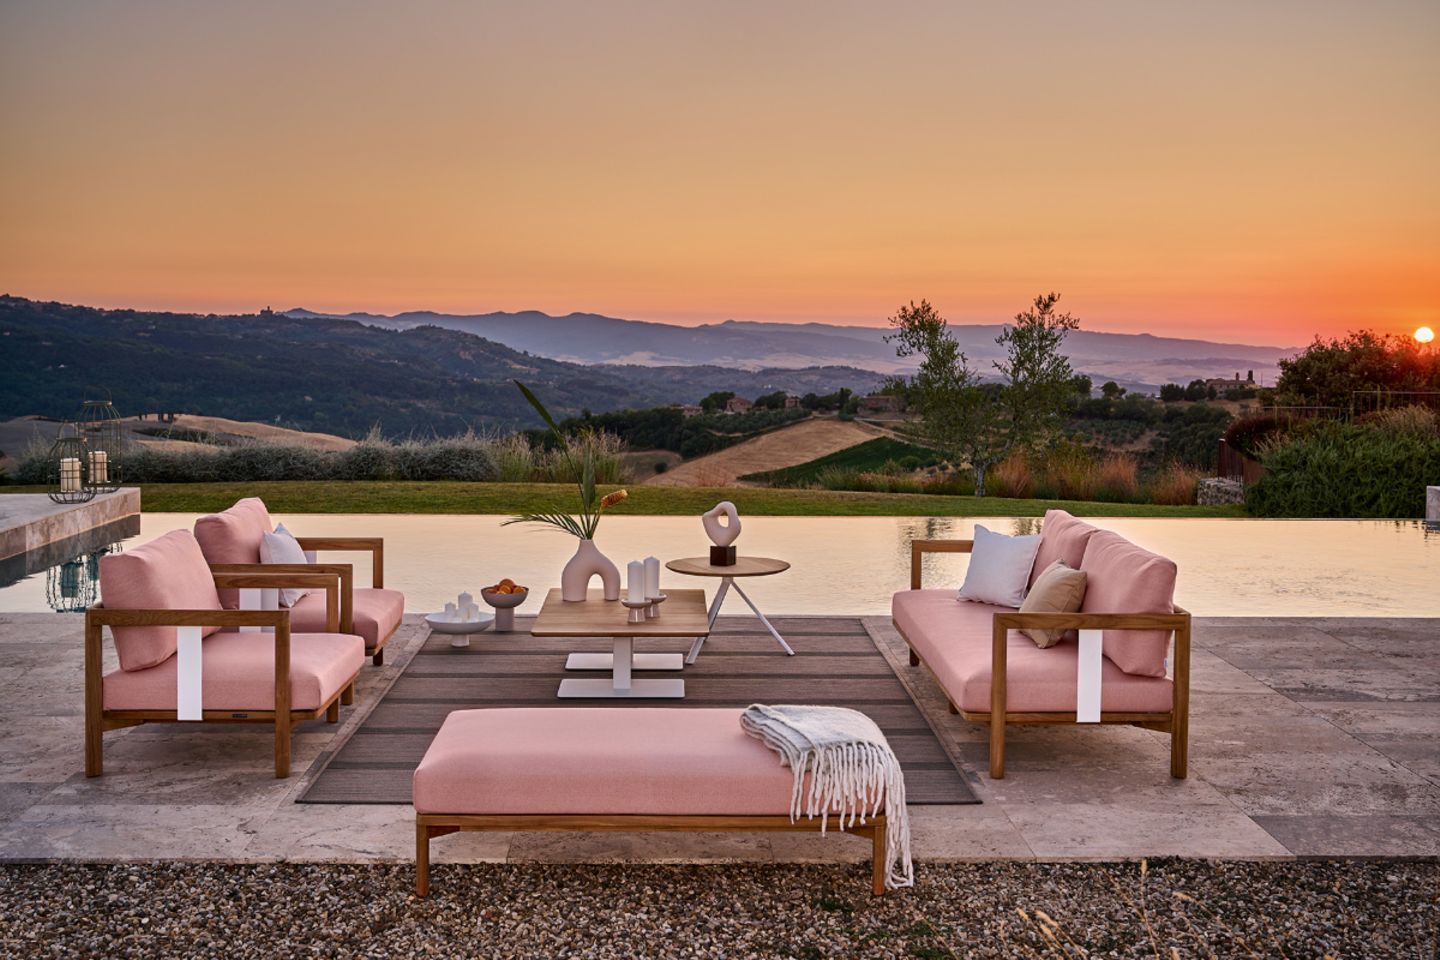 Rosafarbene Polstermöbel auf Terrasse mit Hügellandschaft im Sonnenuntergang